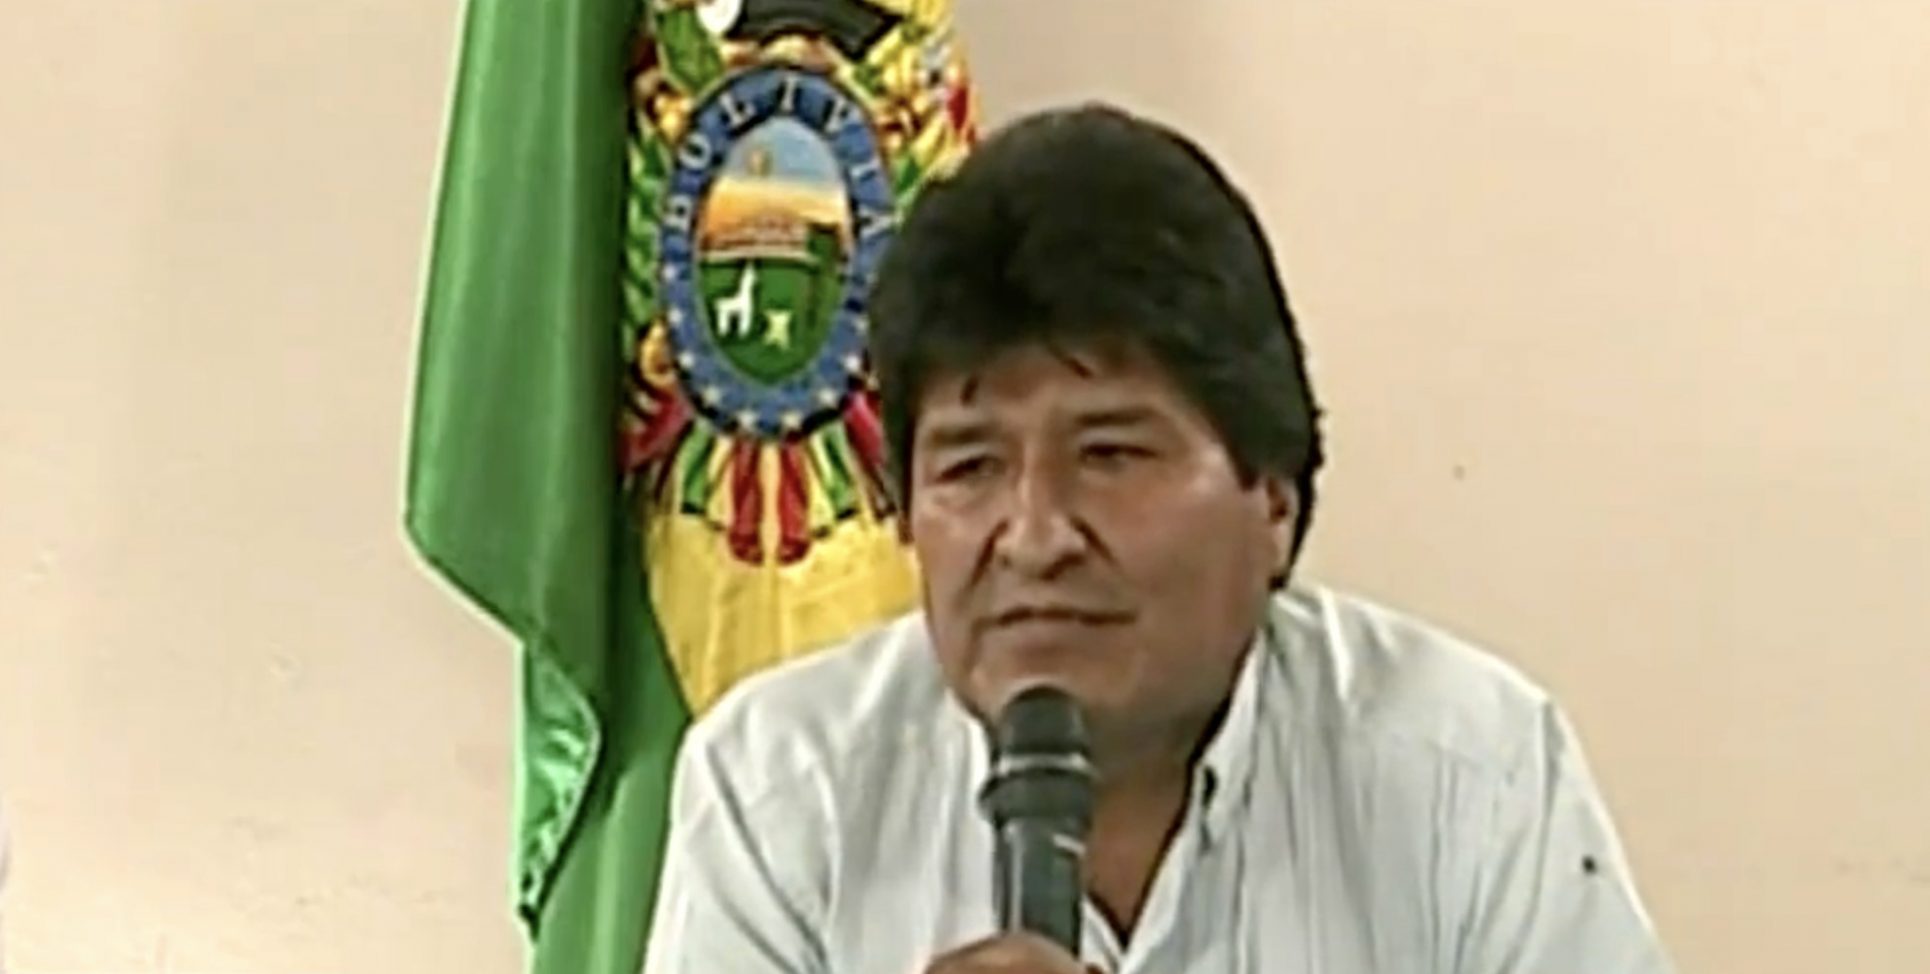 Acorralado por la presión y alegando “golpe de estado”, Evo Morales renuncia por televisión